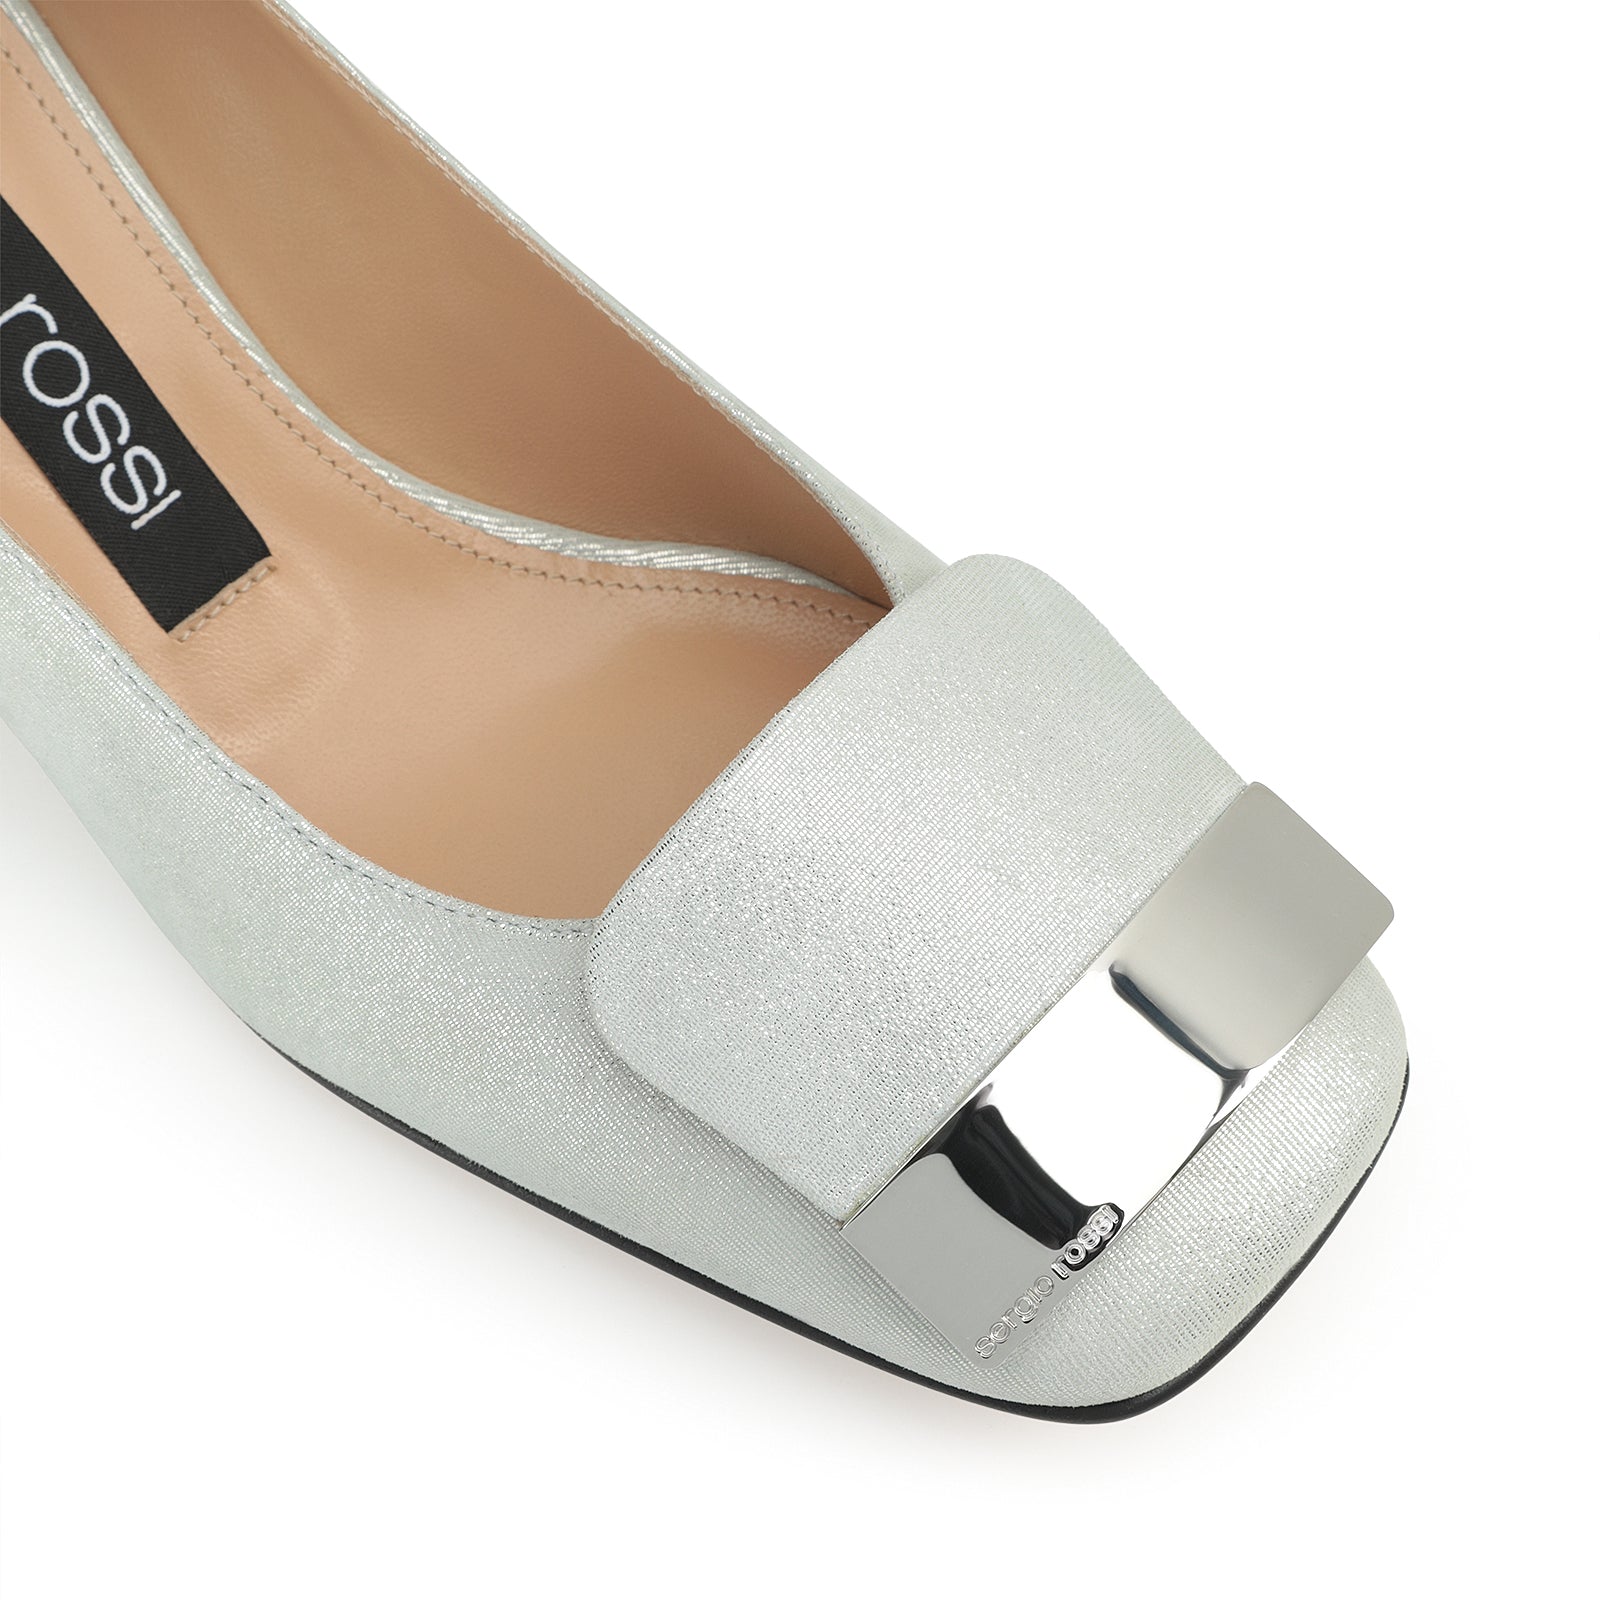 Court shoes Sr1 45 - Silver